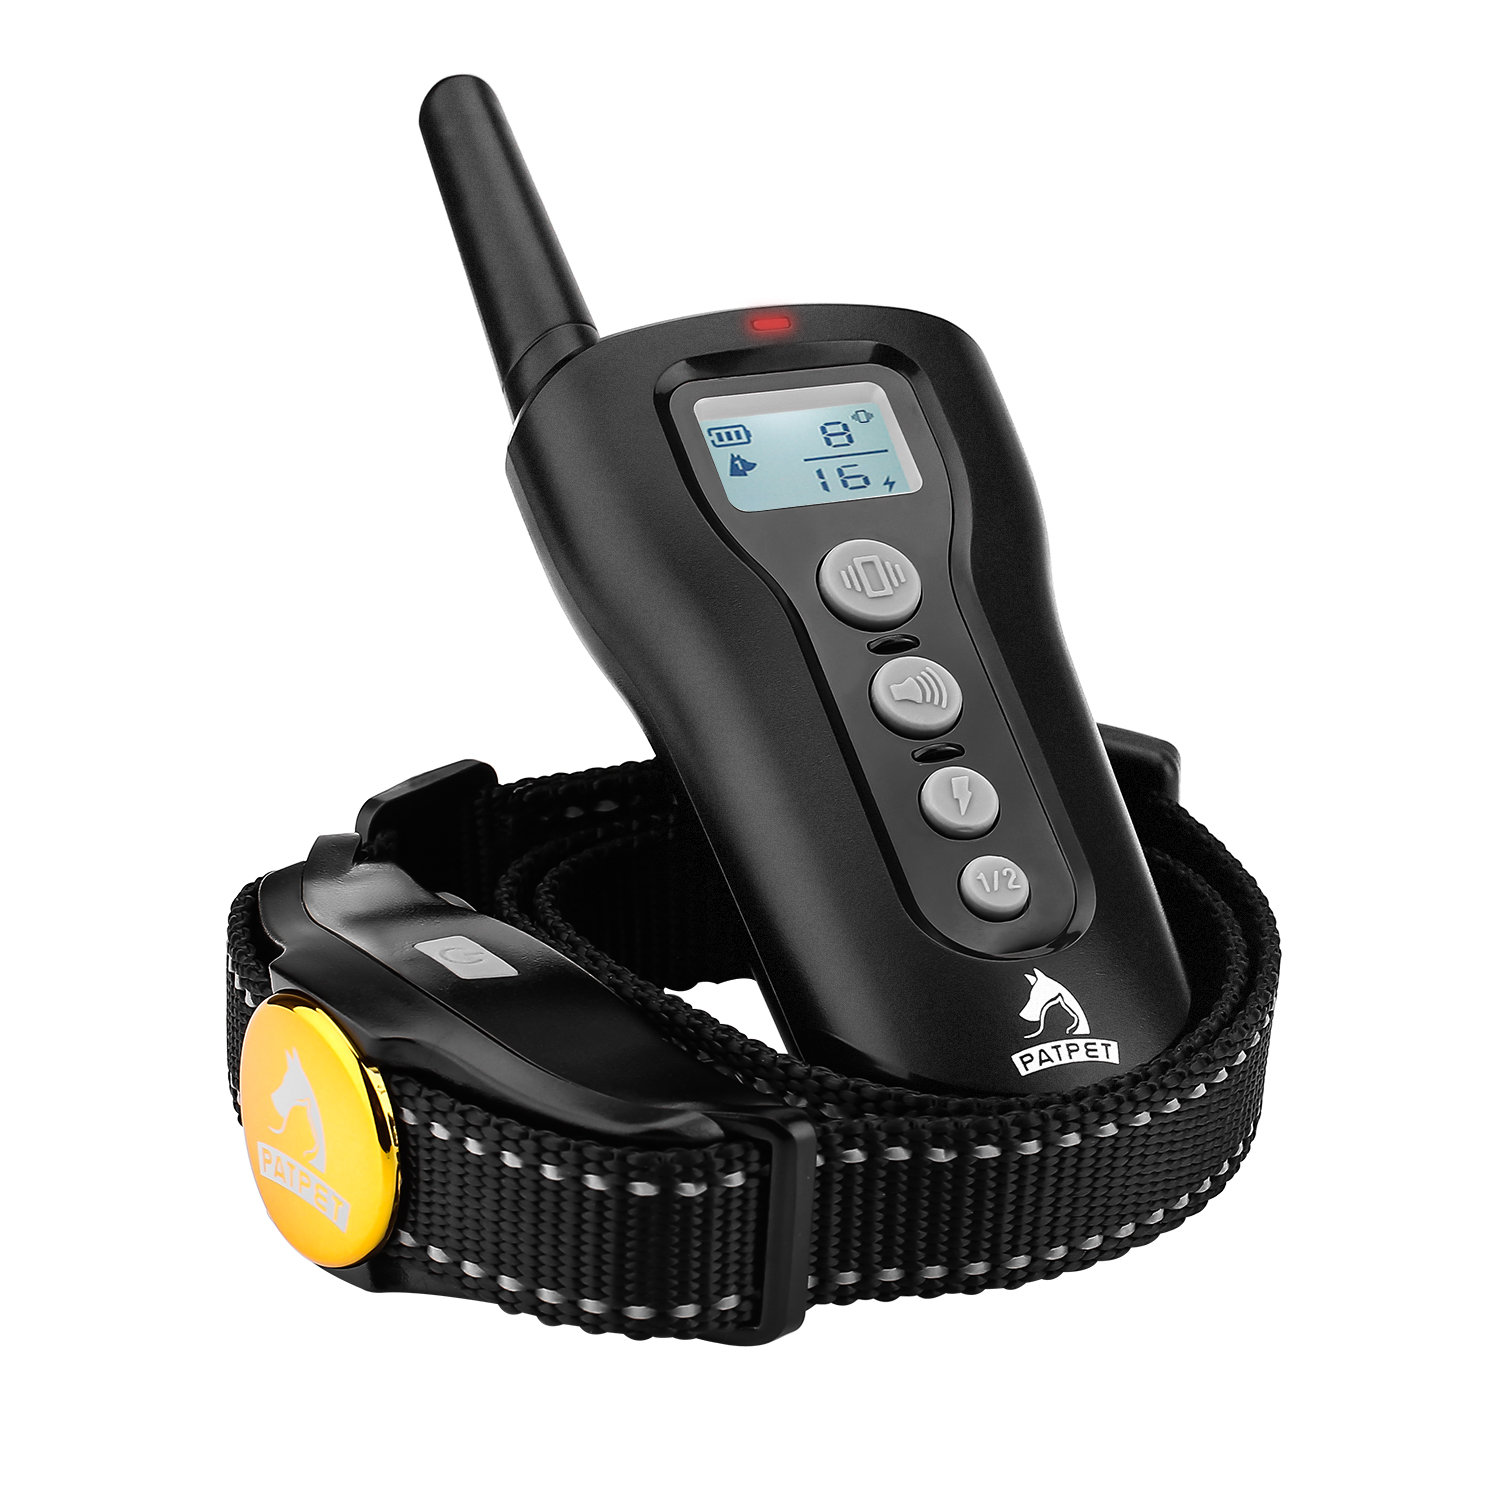 

PATPET P-collar 320 EU Plug Dog Training Collar